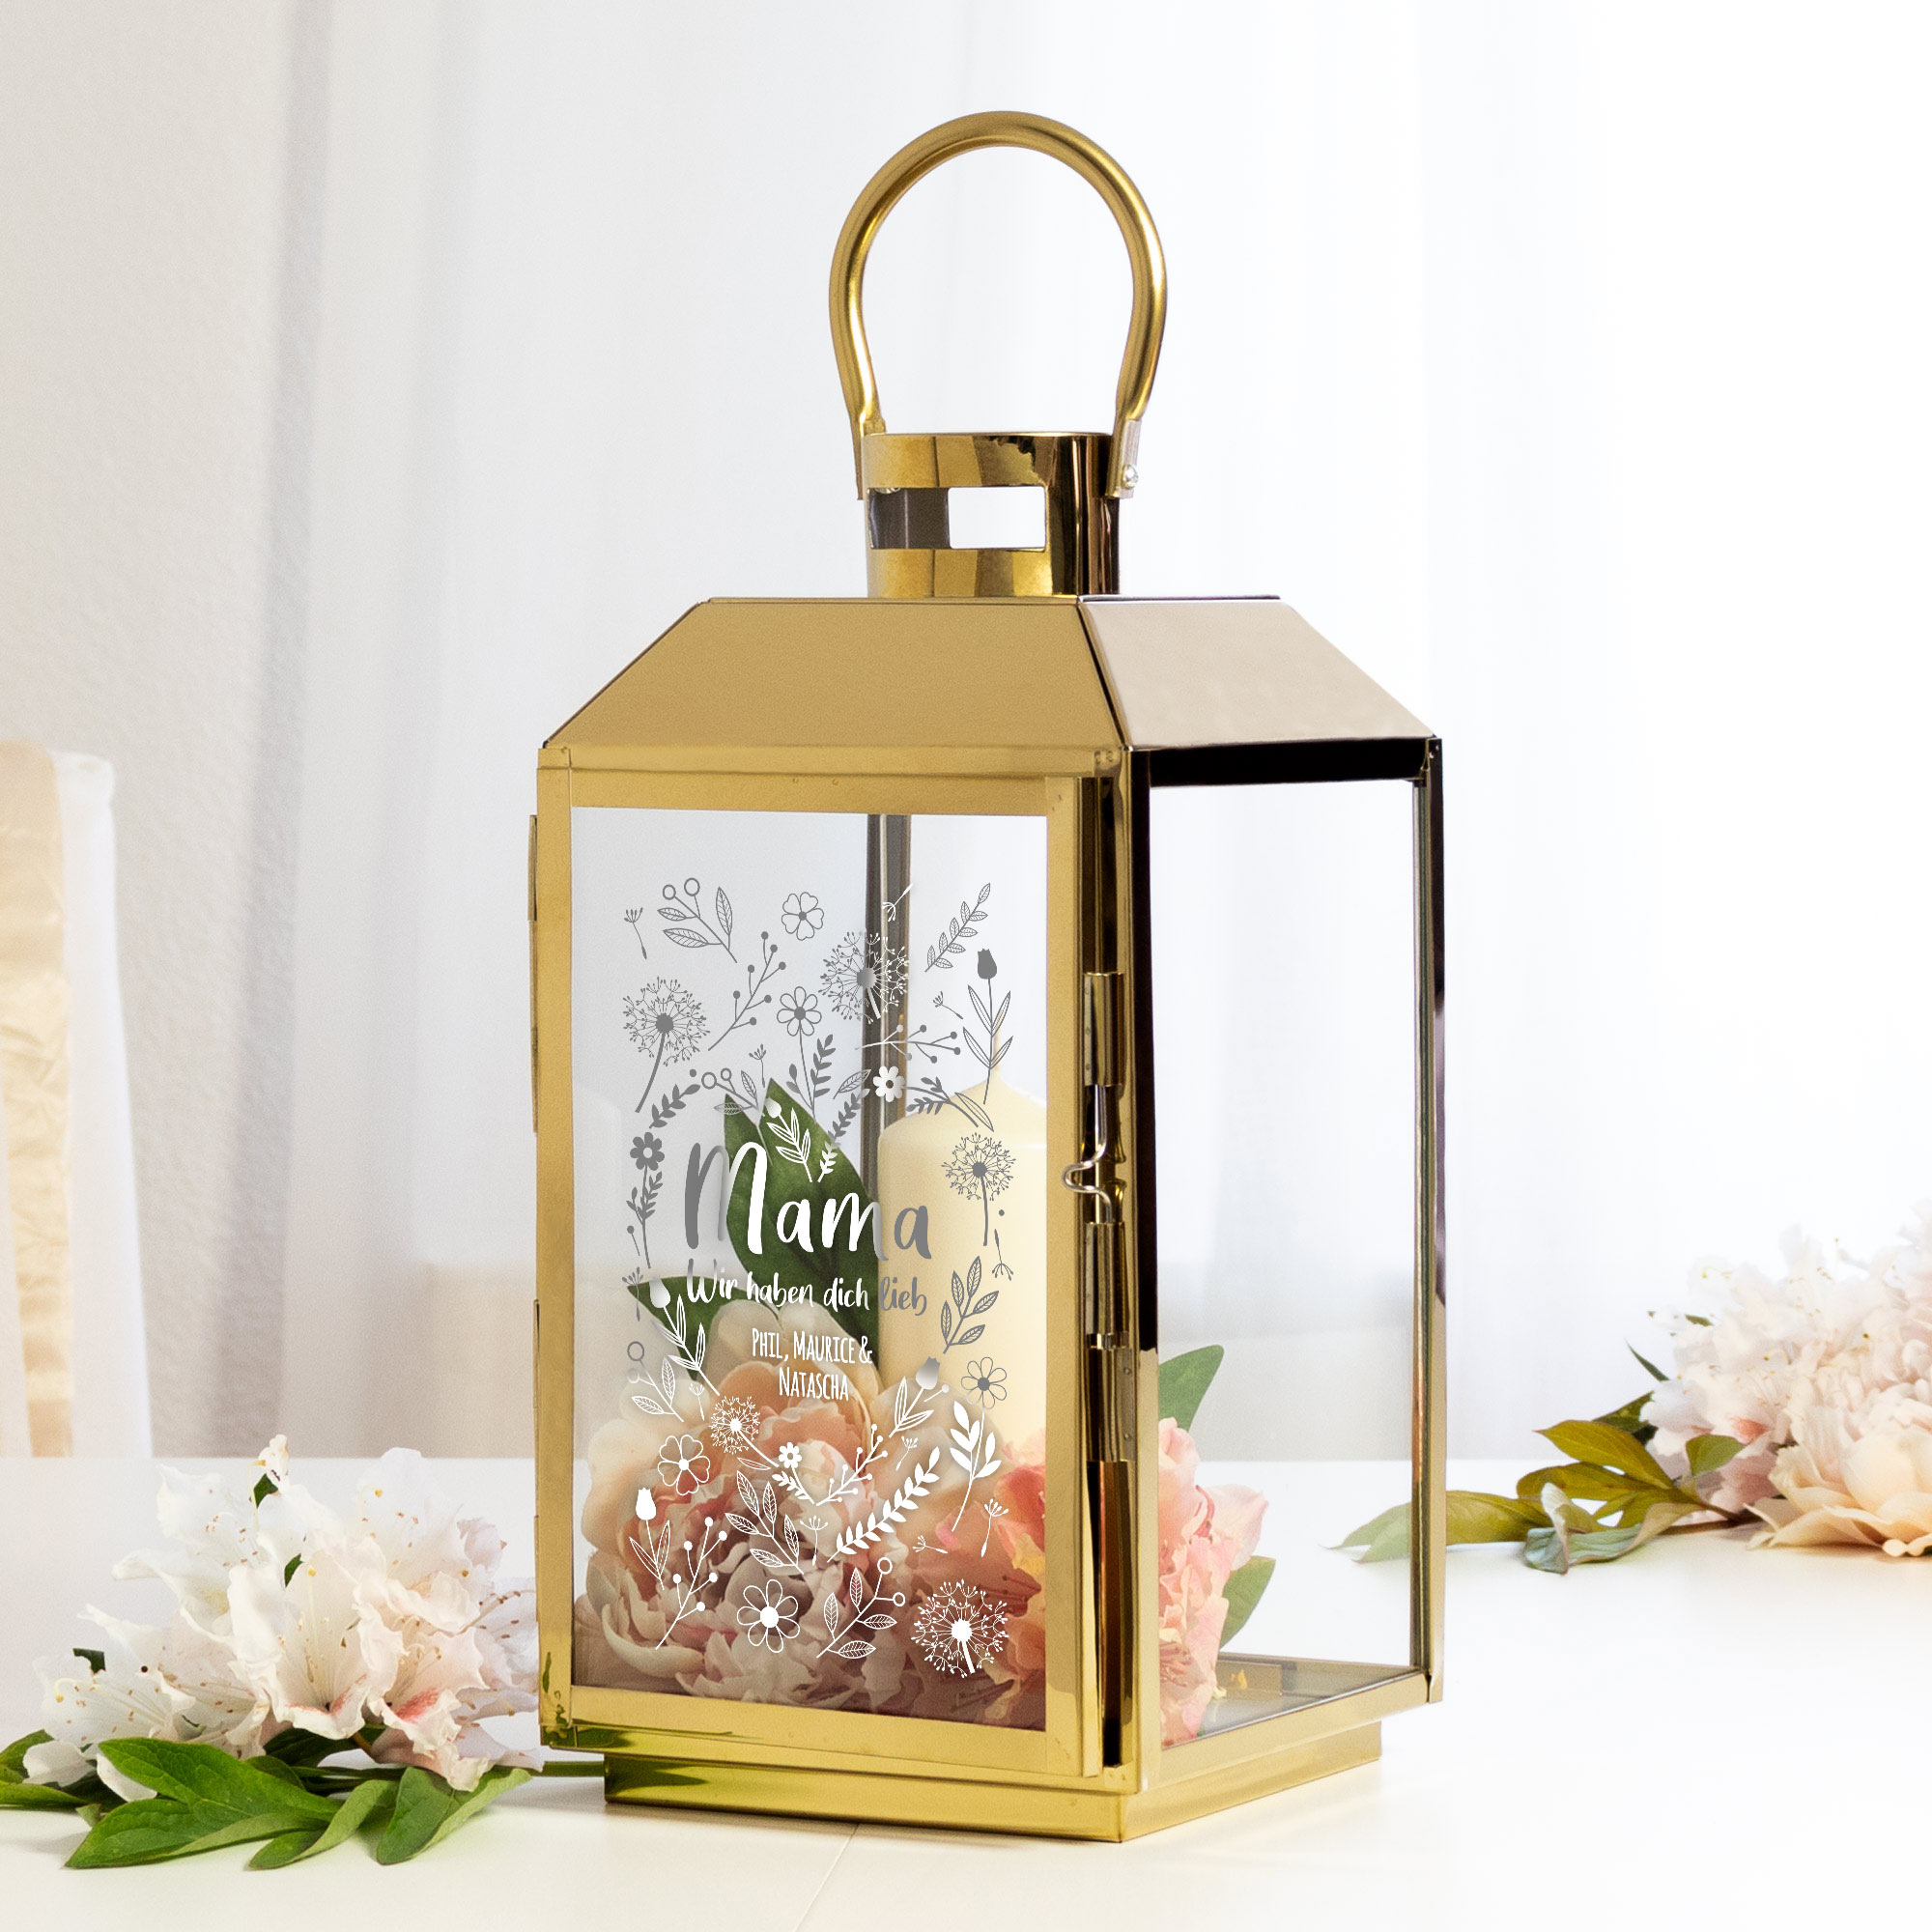 Die Personalisierte Gold Laterne - Blumenherz für Mama ist eine Outdoor Dekoration für draußen, wetterfest, als Windlicht ein tolles Muttertagsgesc